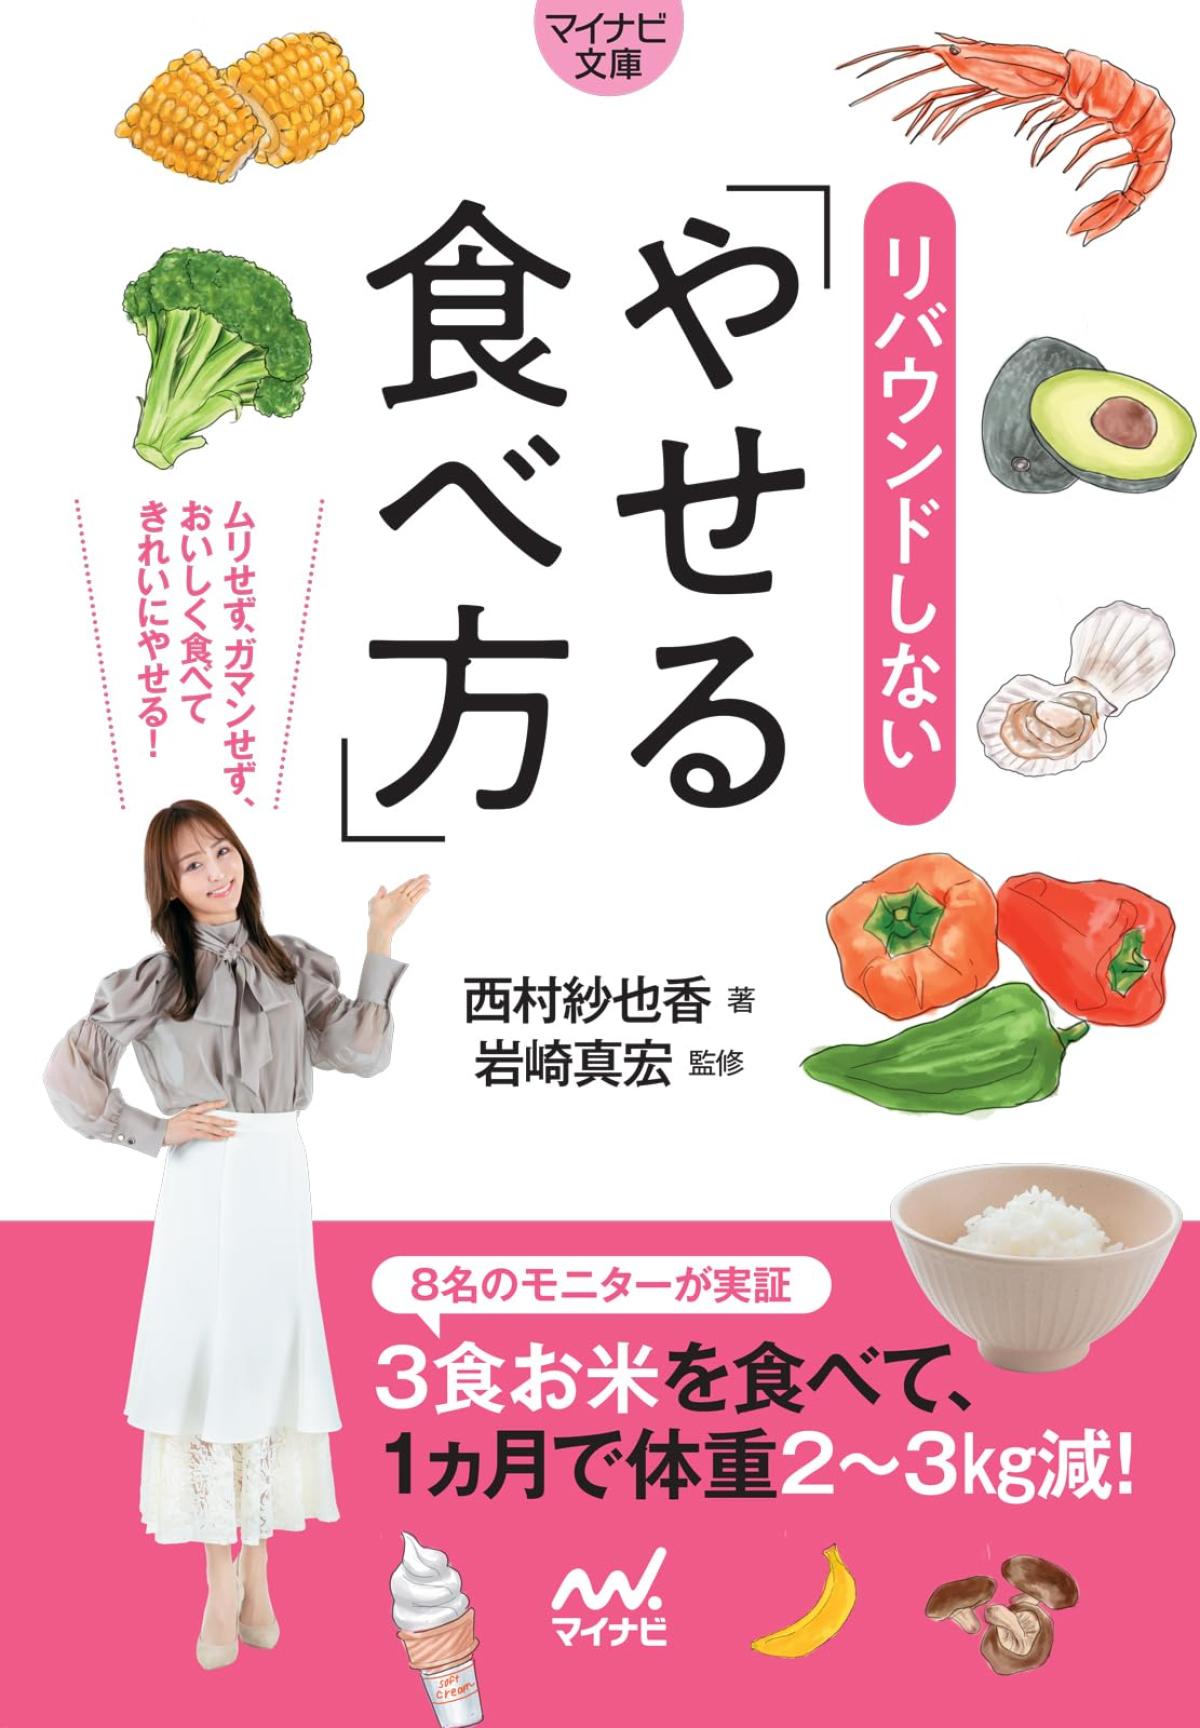 ミスユニバースジャパン ファイナリスト 西村紗也香さんの著書、マイナビ文庫出版「リバウンドしないやせる食べ方」が文庫化されました！【栄養コンシェルジュ取得後のご活躍】